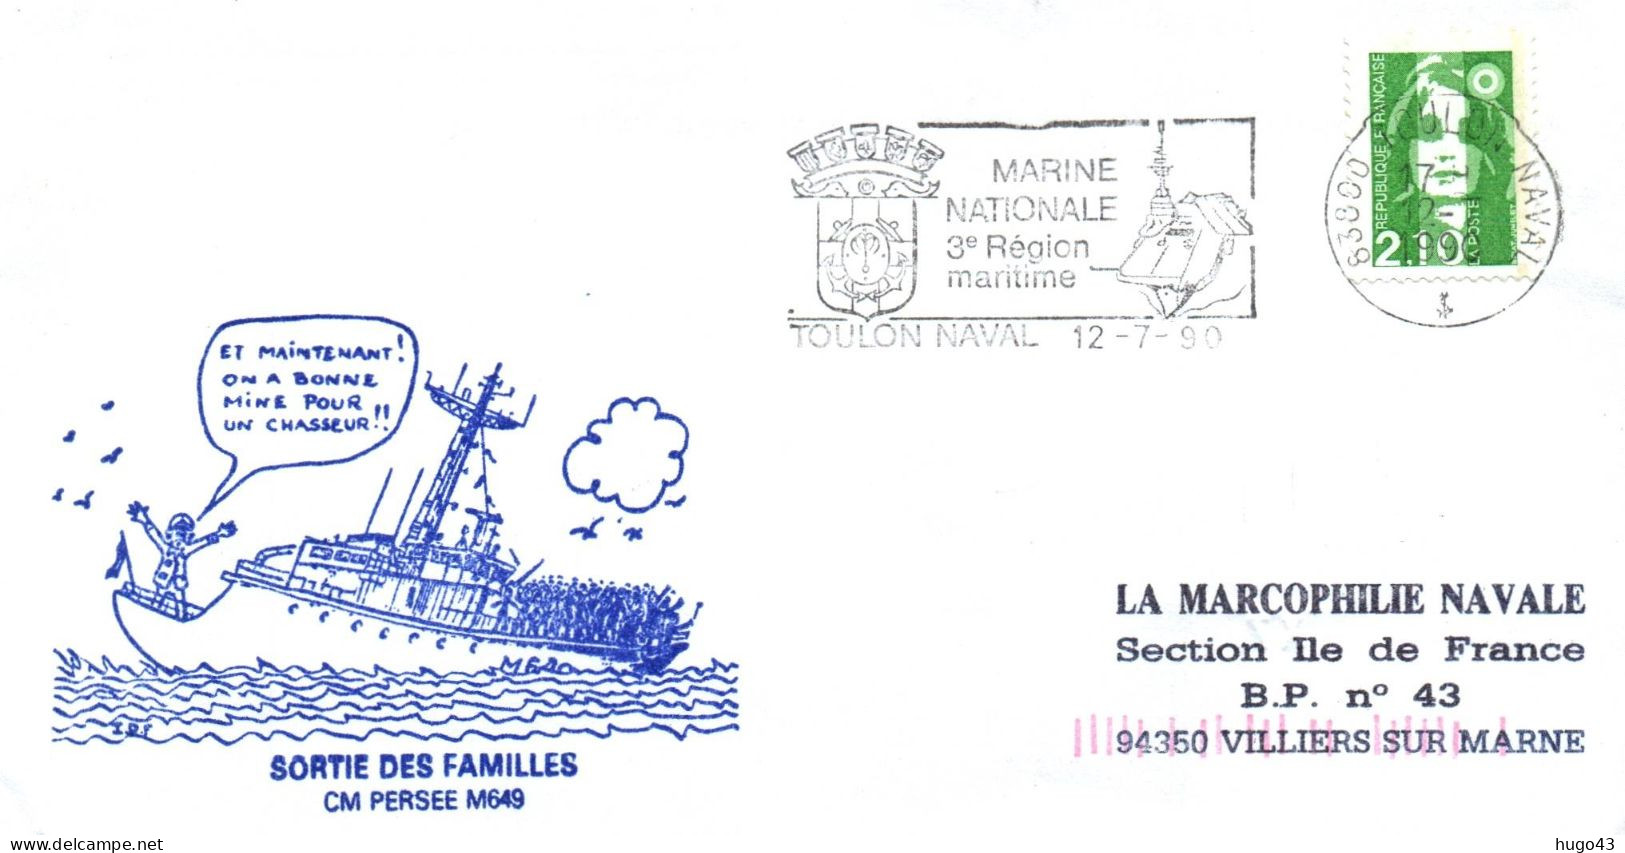 ENVELOPPE AVEC CACHET CM PERSEE M649 - SORTIE DES FAMILLES - TOULON NAVAL LE 12/7/90 - Naval Post